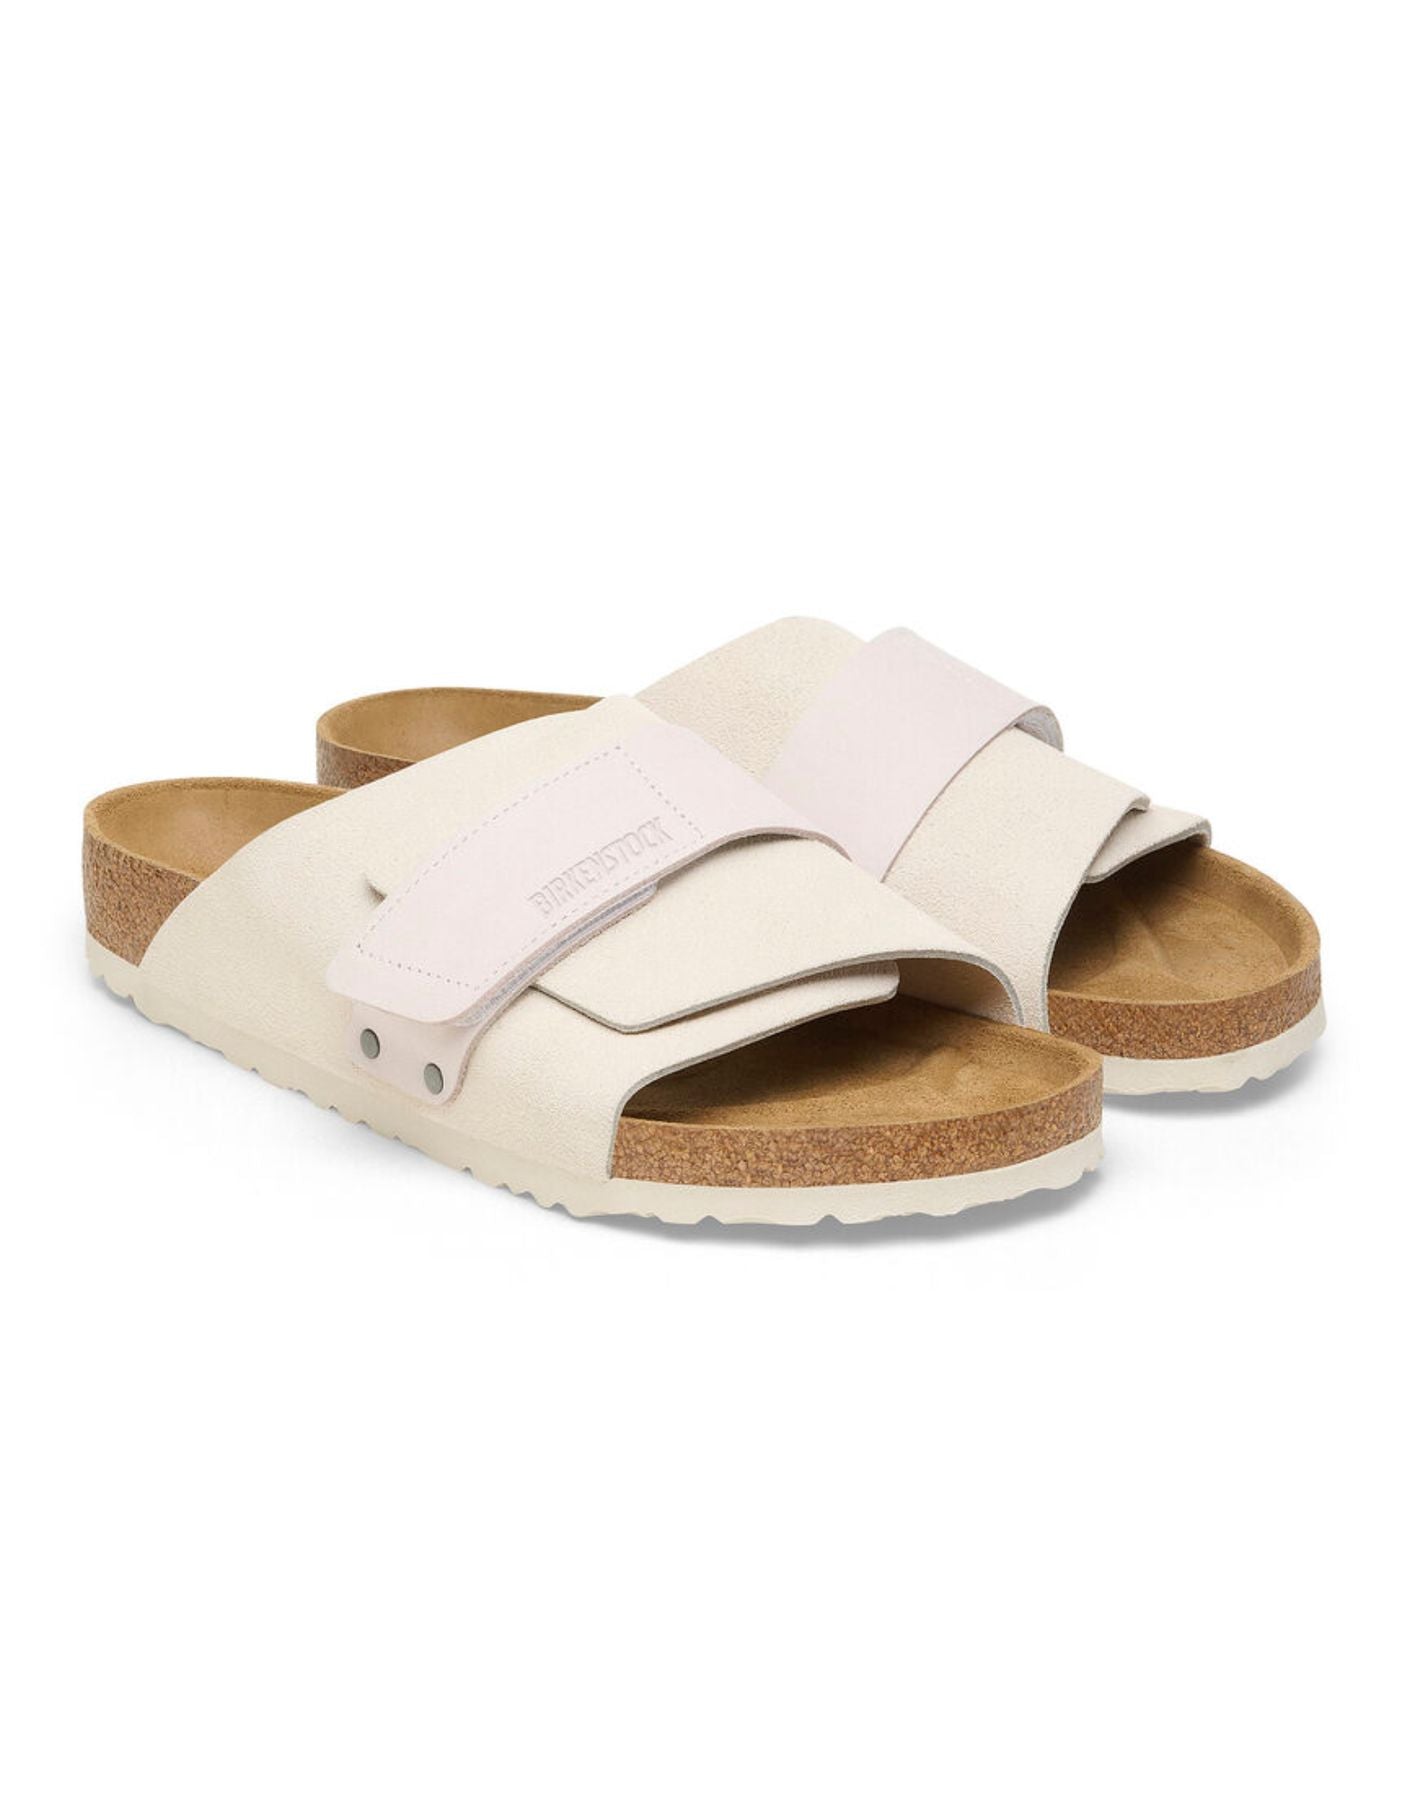 Sandals Man 1024526 Kyoto White M Birkenstock